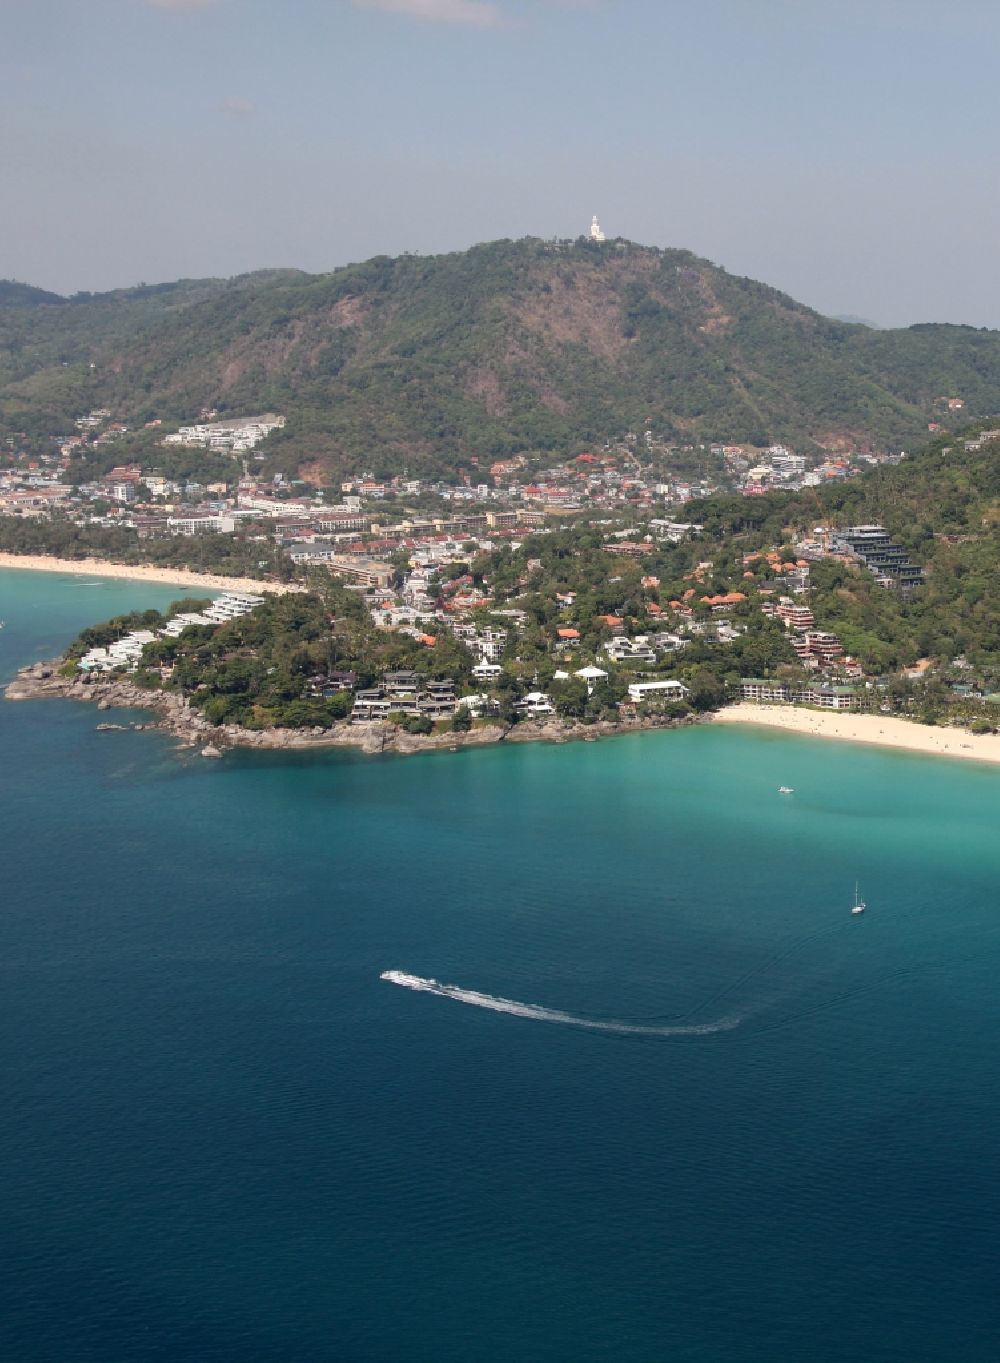 Luftbild Karon - Kata Noi Beach vor der Stadt Karon auf der Insel Phuket in Thailand